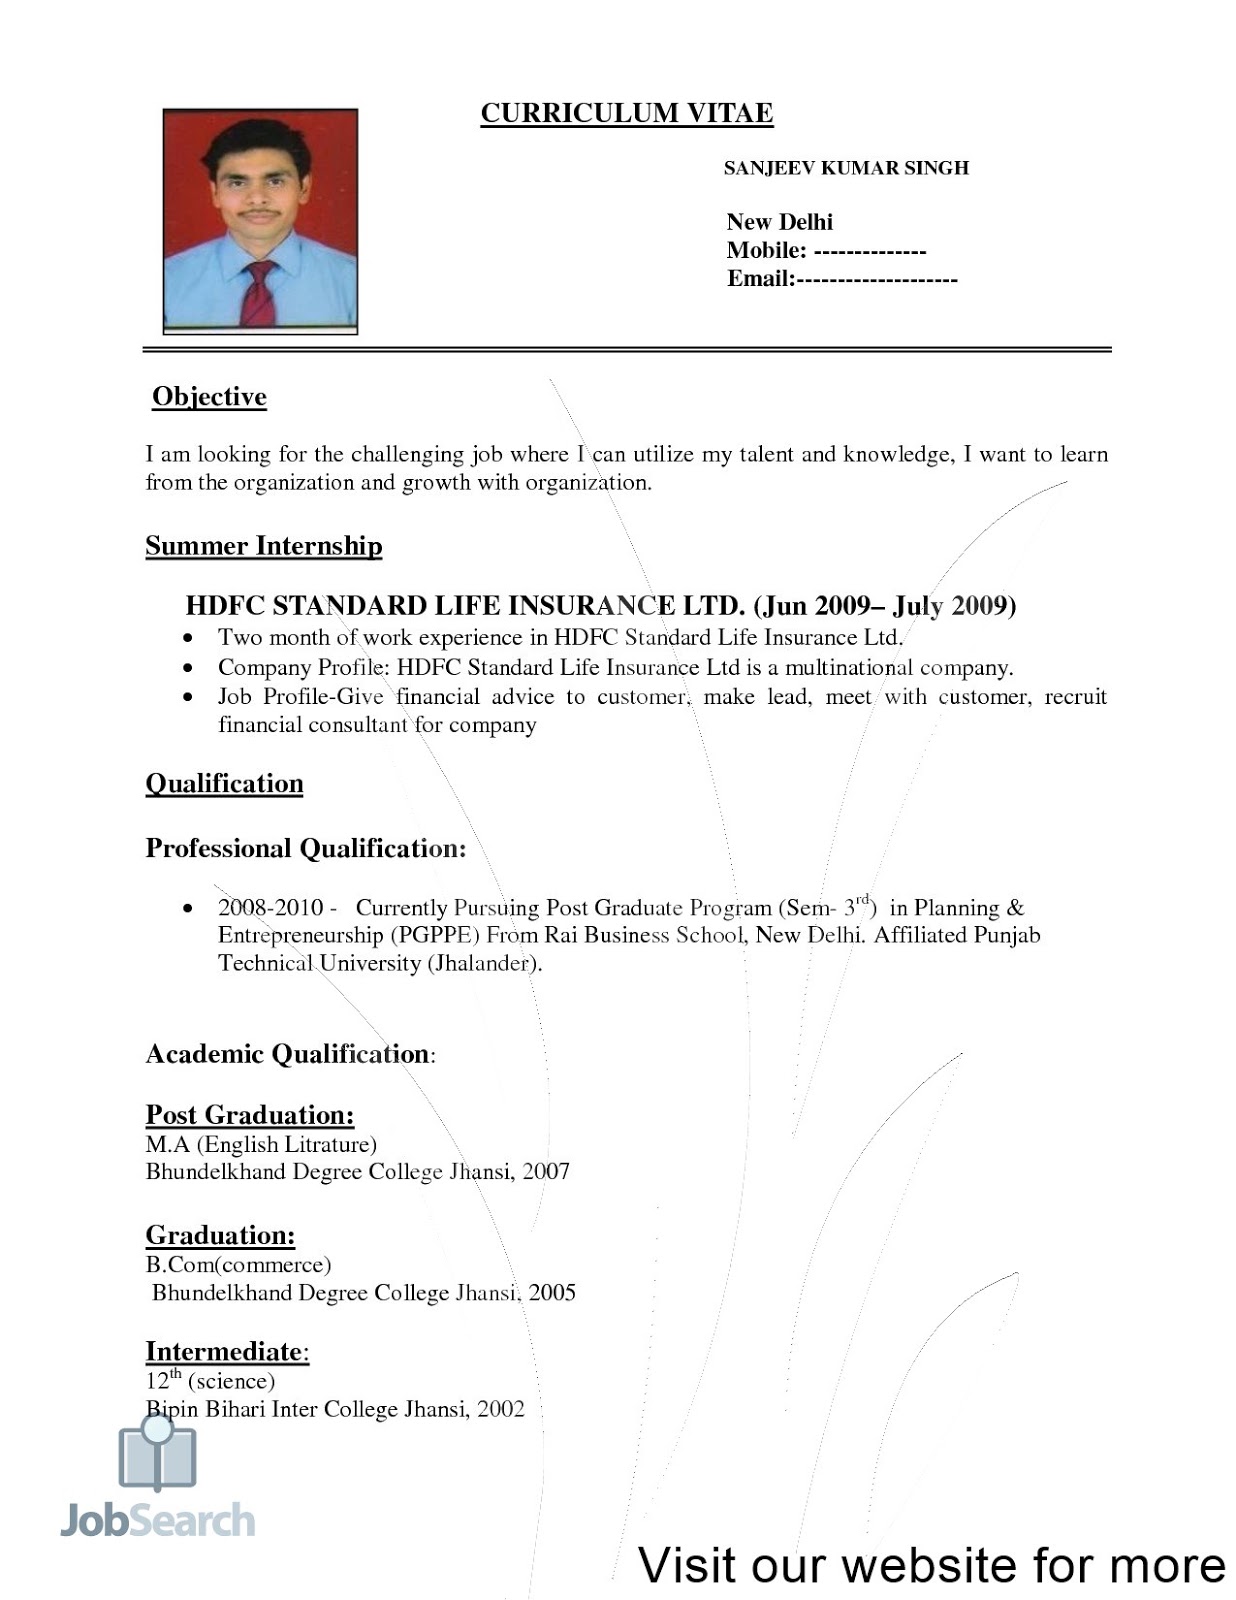 format my resume format my resume free format my resume for me how to format my resume in word what format should my resume be in my resume format